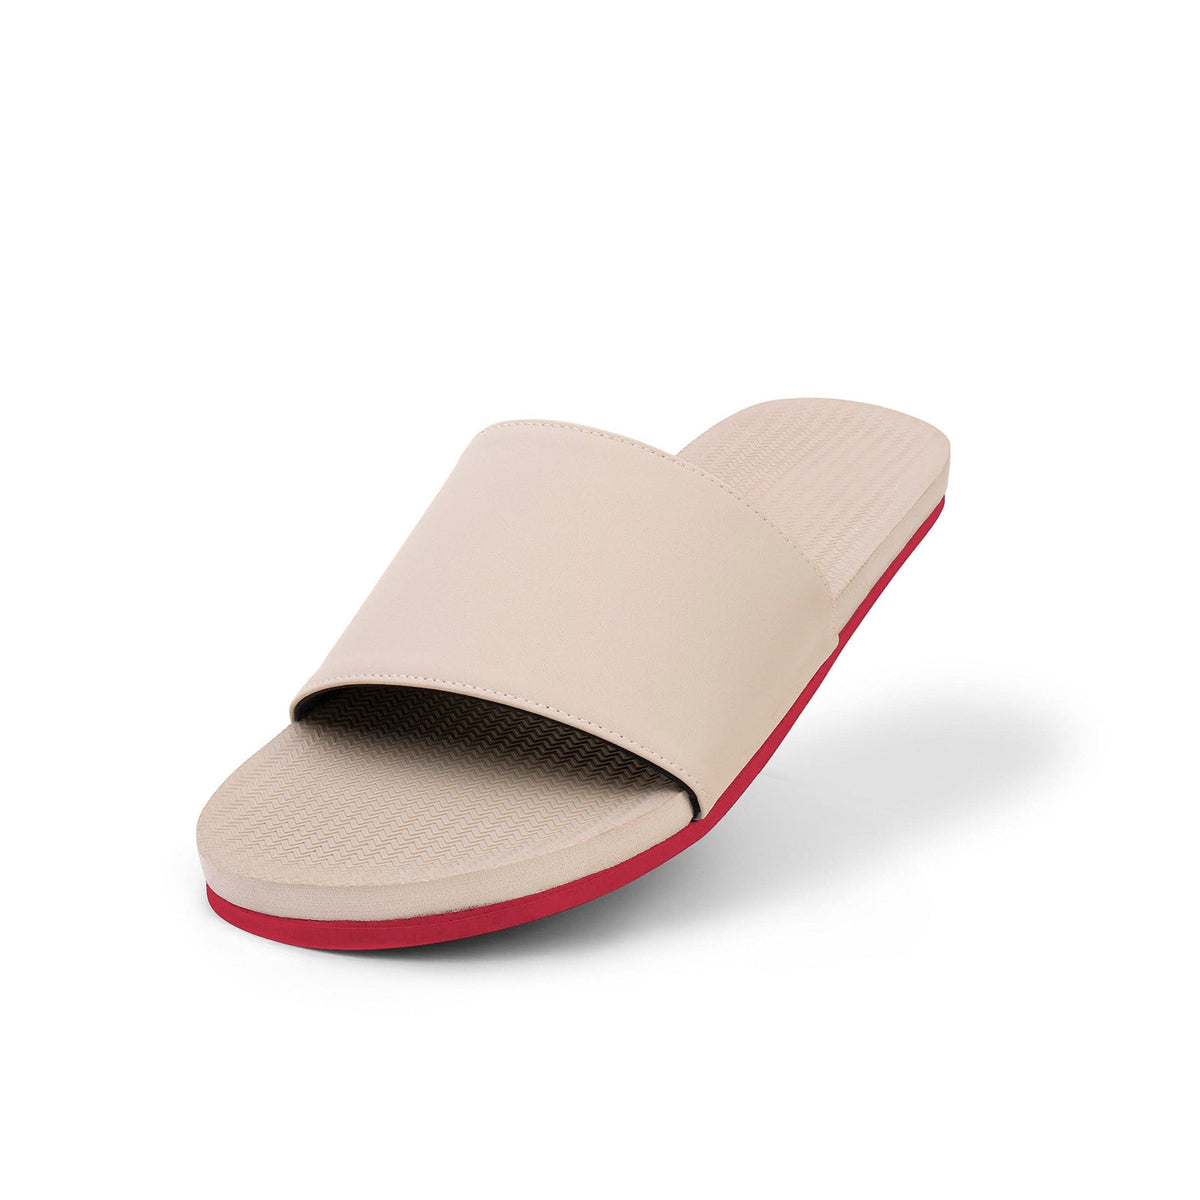 Women's Slide Sneaker Sole - Sea Salt/Red Sole - Indosole